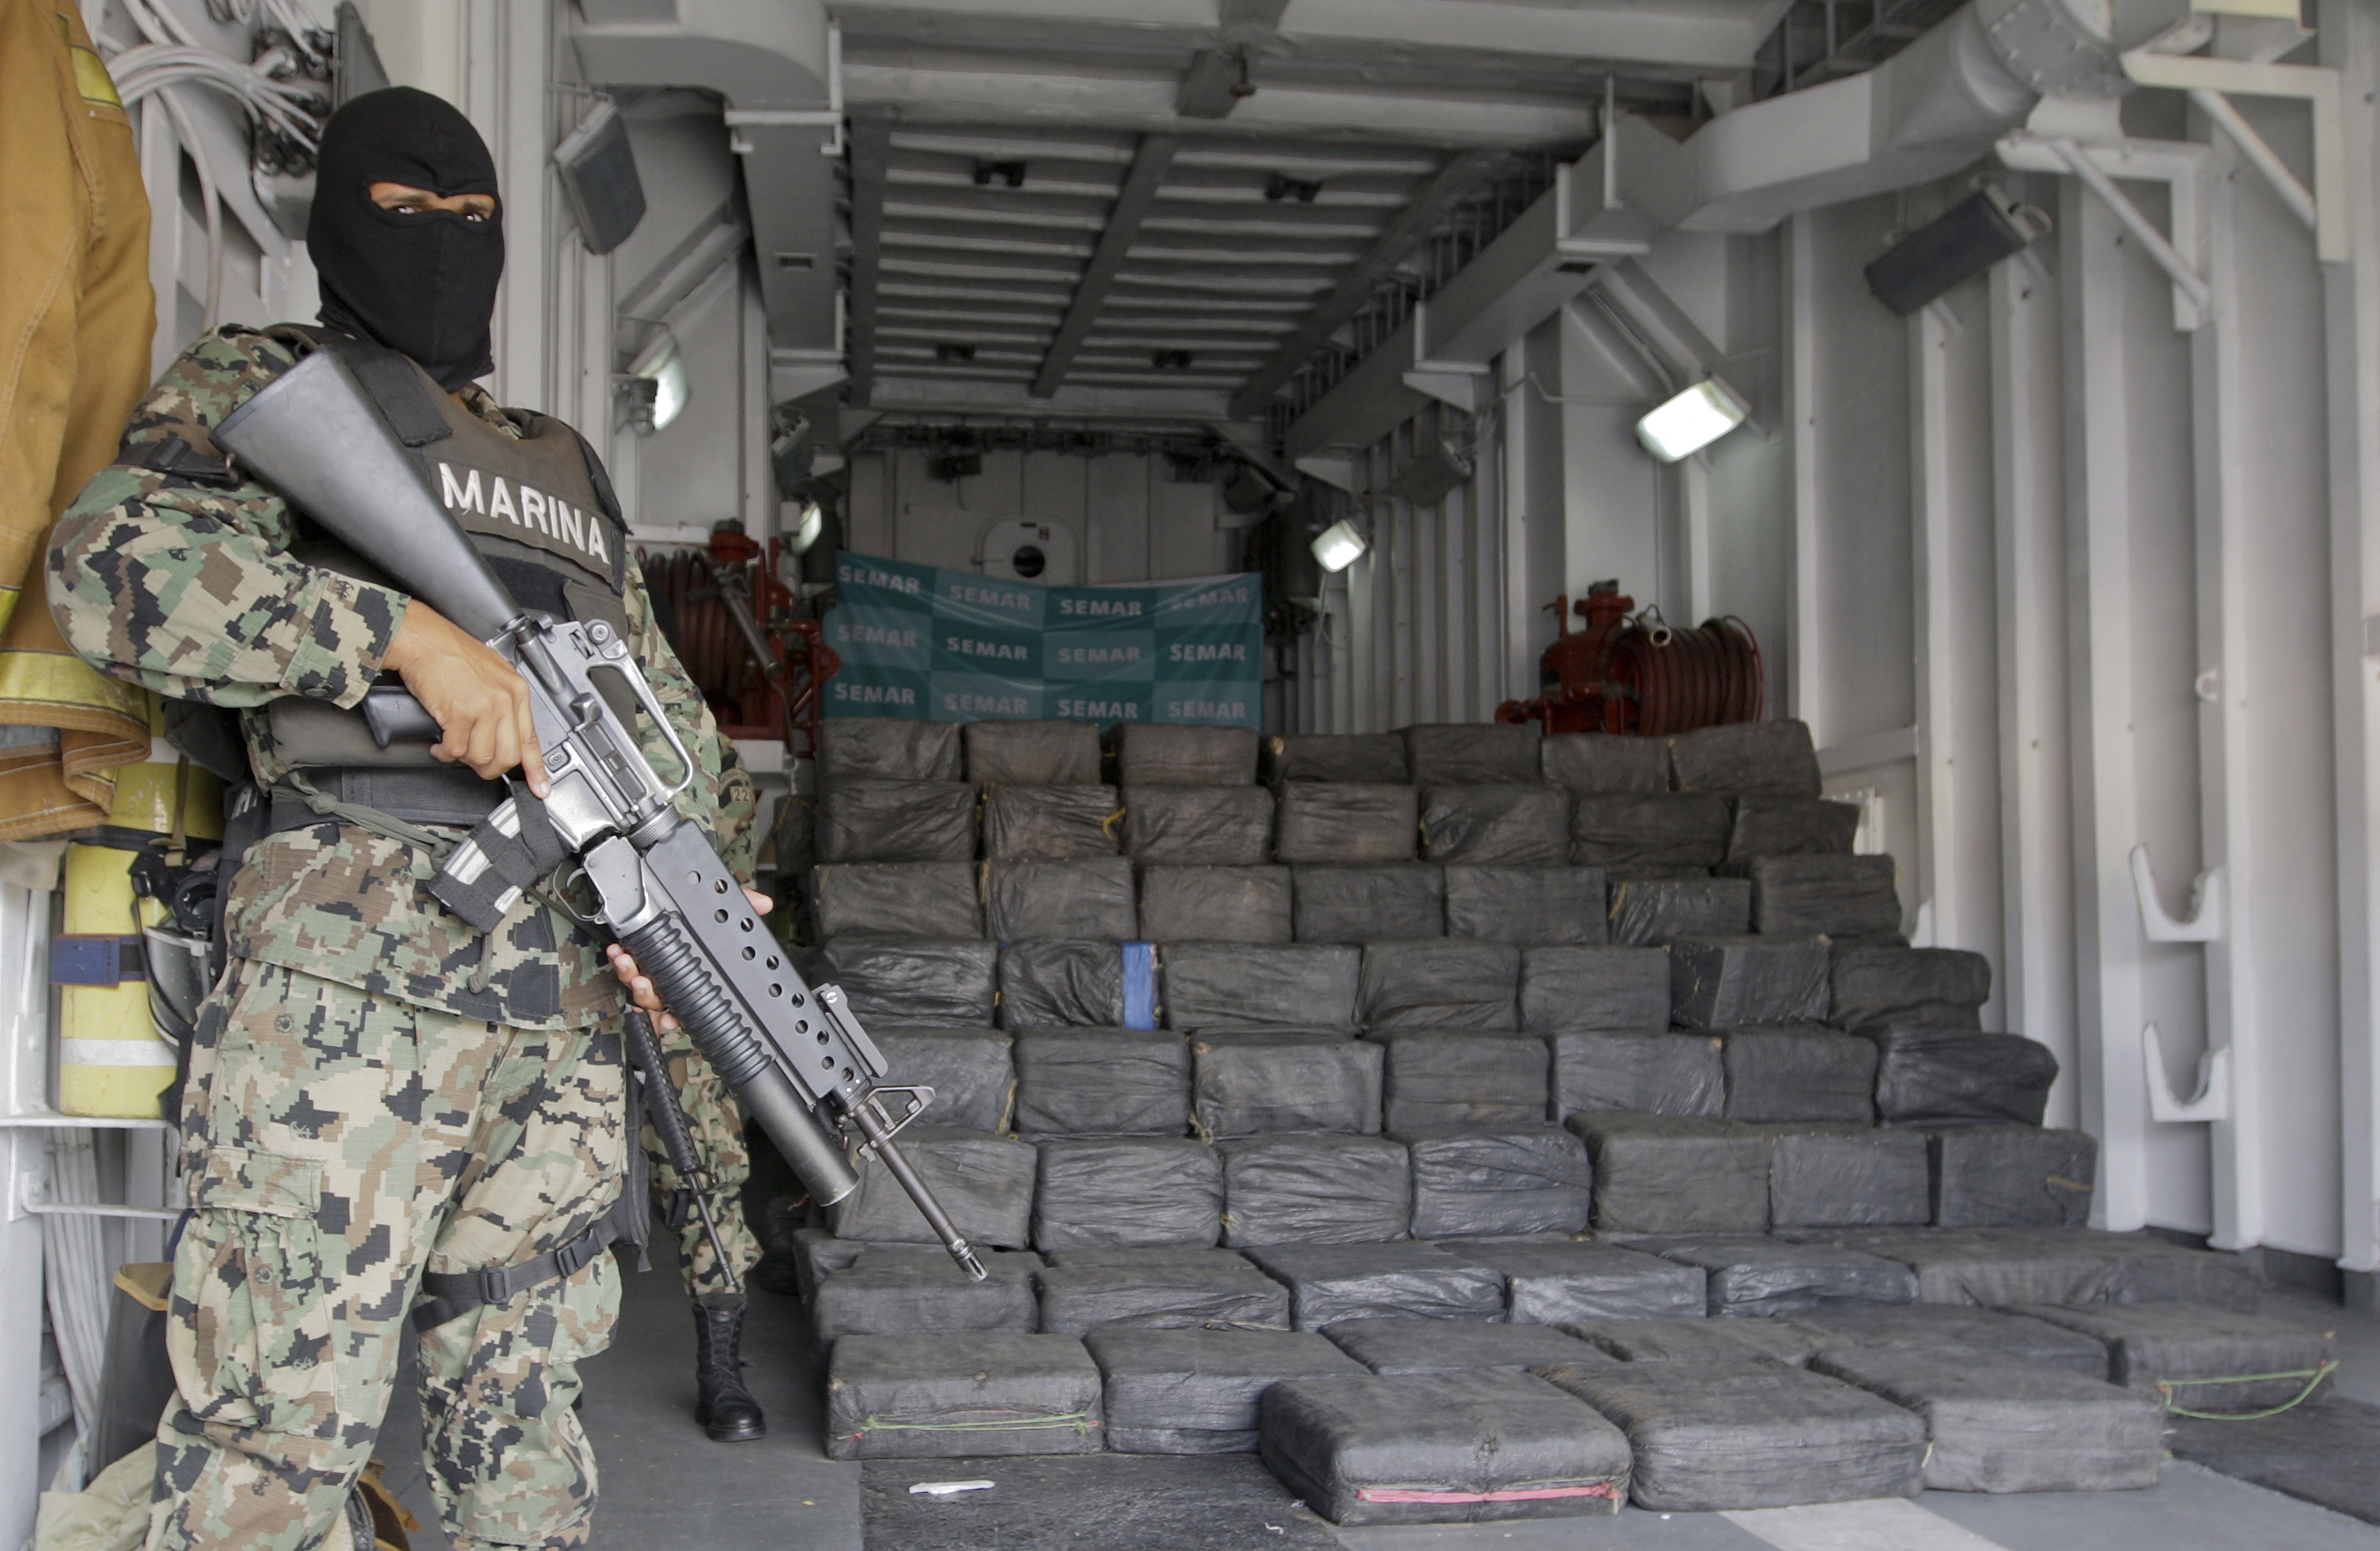  Droga: broker internazionale di cocaina arrestato in Messico